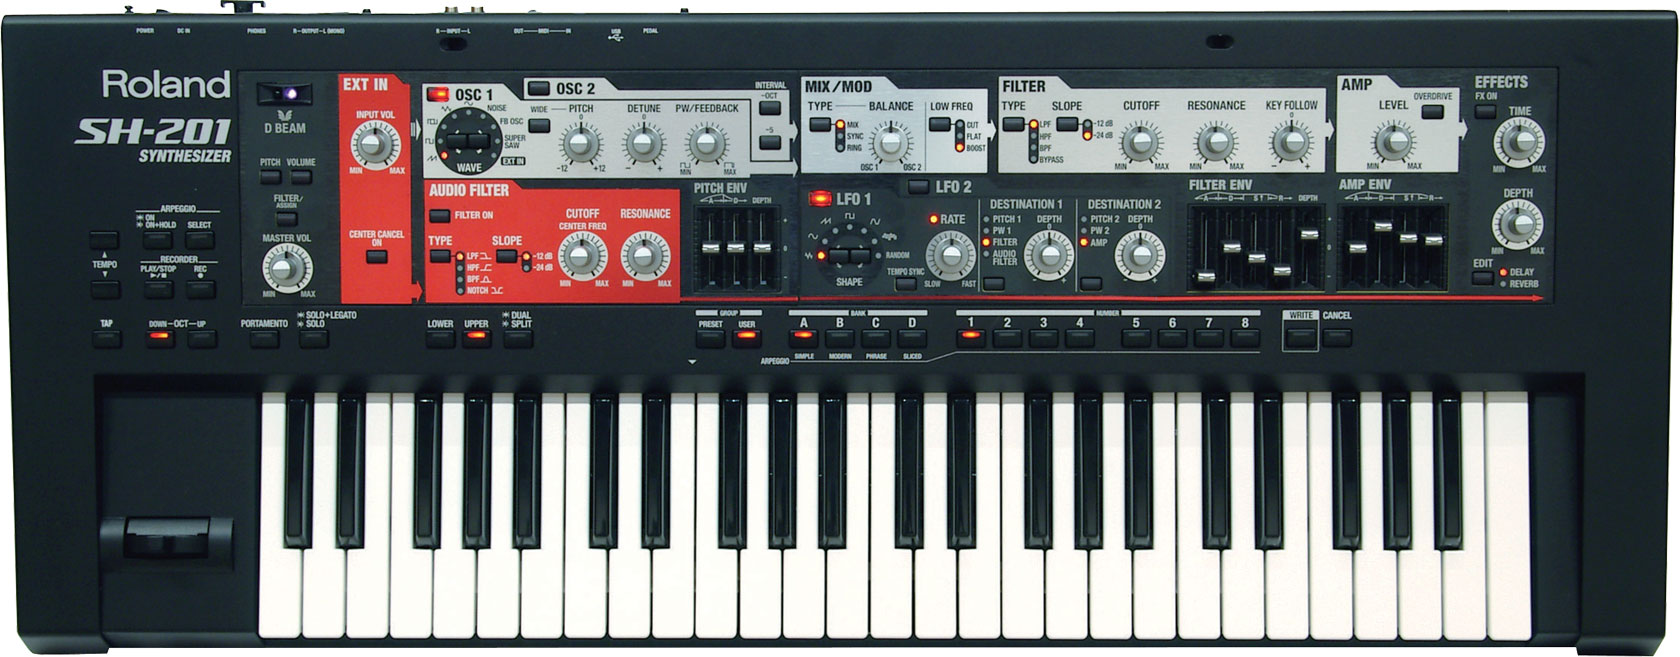 Roland - Synthesizer SH-201